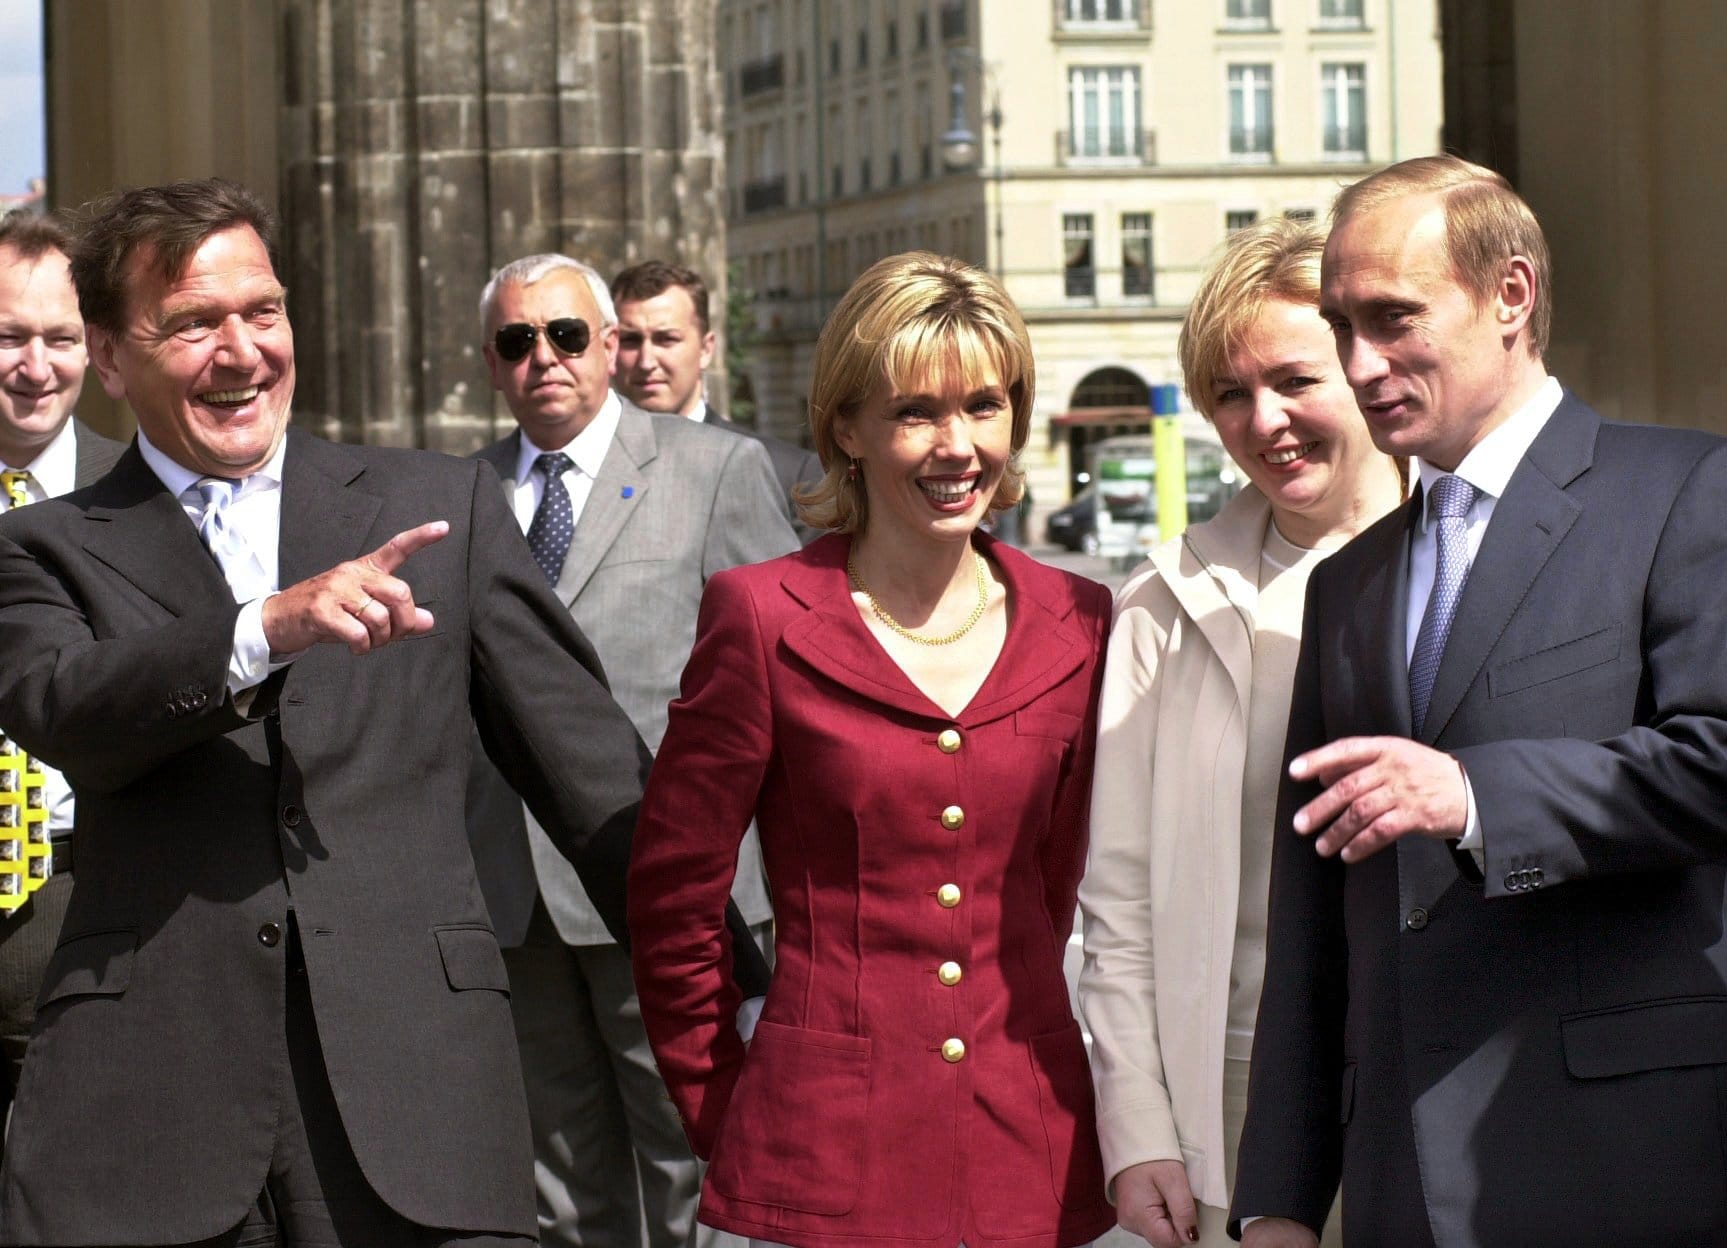 Legendär der Spruch vom "lupenreinen Demokraten", als den Ex-Kanzler Schröder Putin einst bezeichnete. Die beiden verstanden sich ausgesprochen gut. Hier beim Spaziergang mit den Ehefrauen Doris Schröder-Köpf (l.) und Ljudmila Putina am Brandenburger Tor.